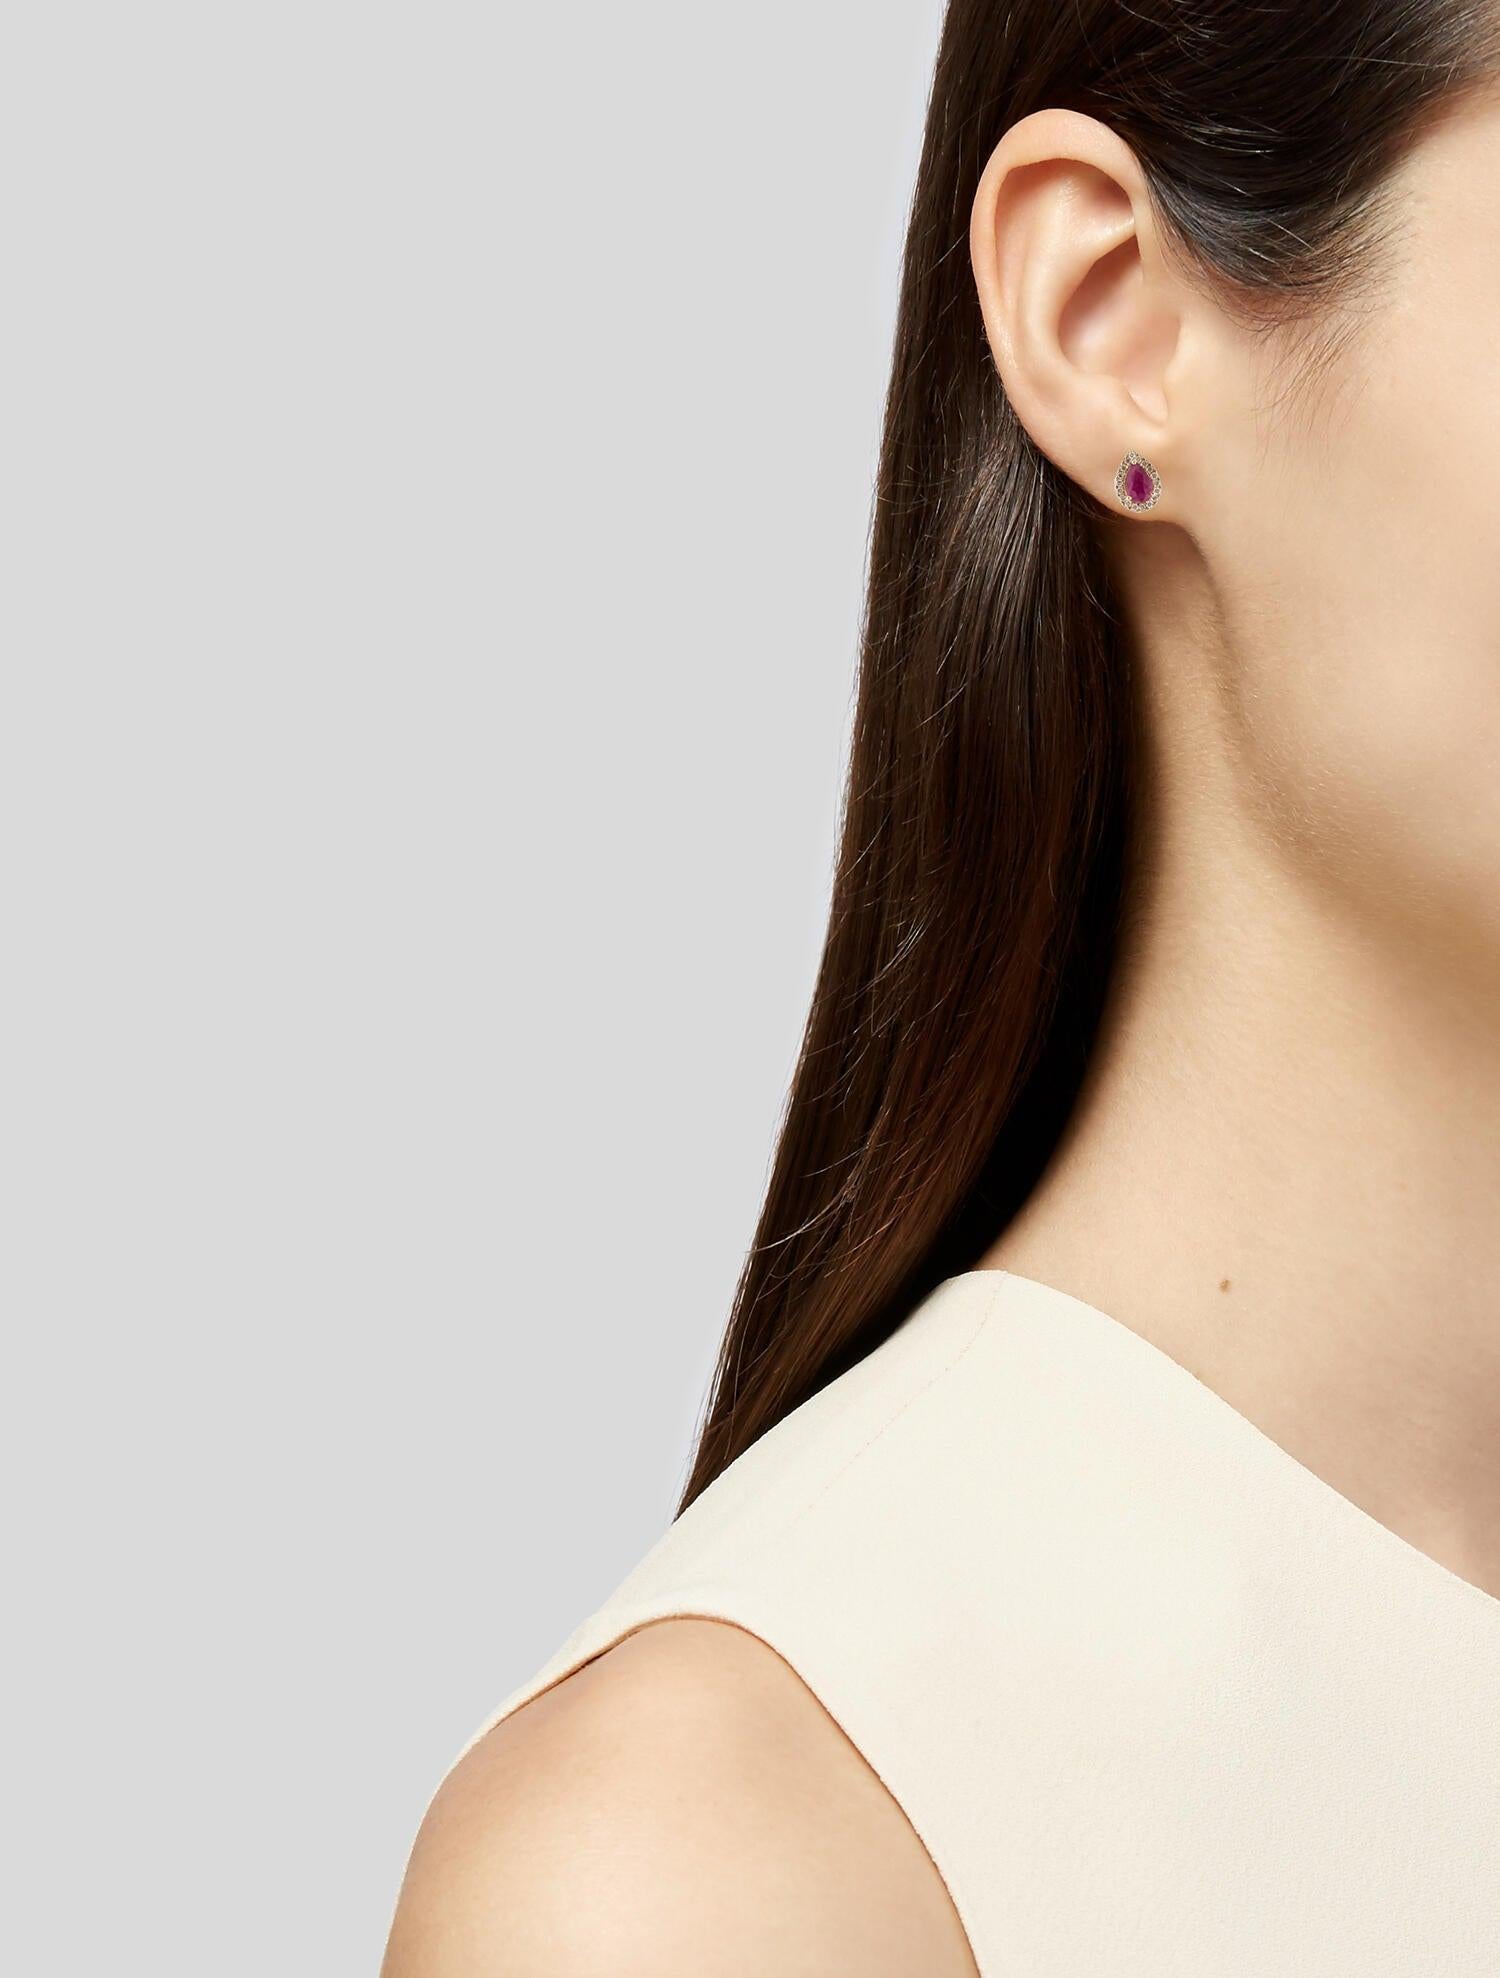 14K 1.11ctw Ruby & Diamond Halo Stud Earrings - Elegant Glamour, Timeless Design 1